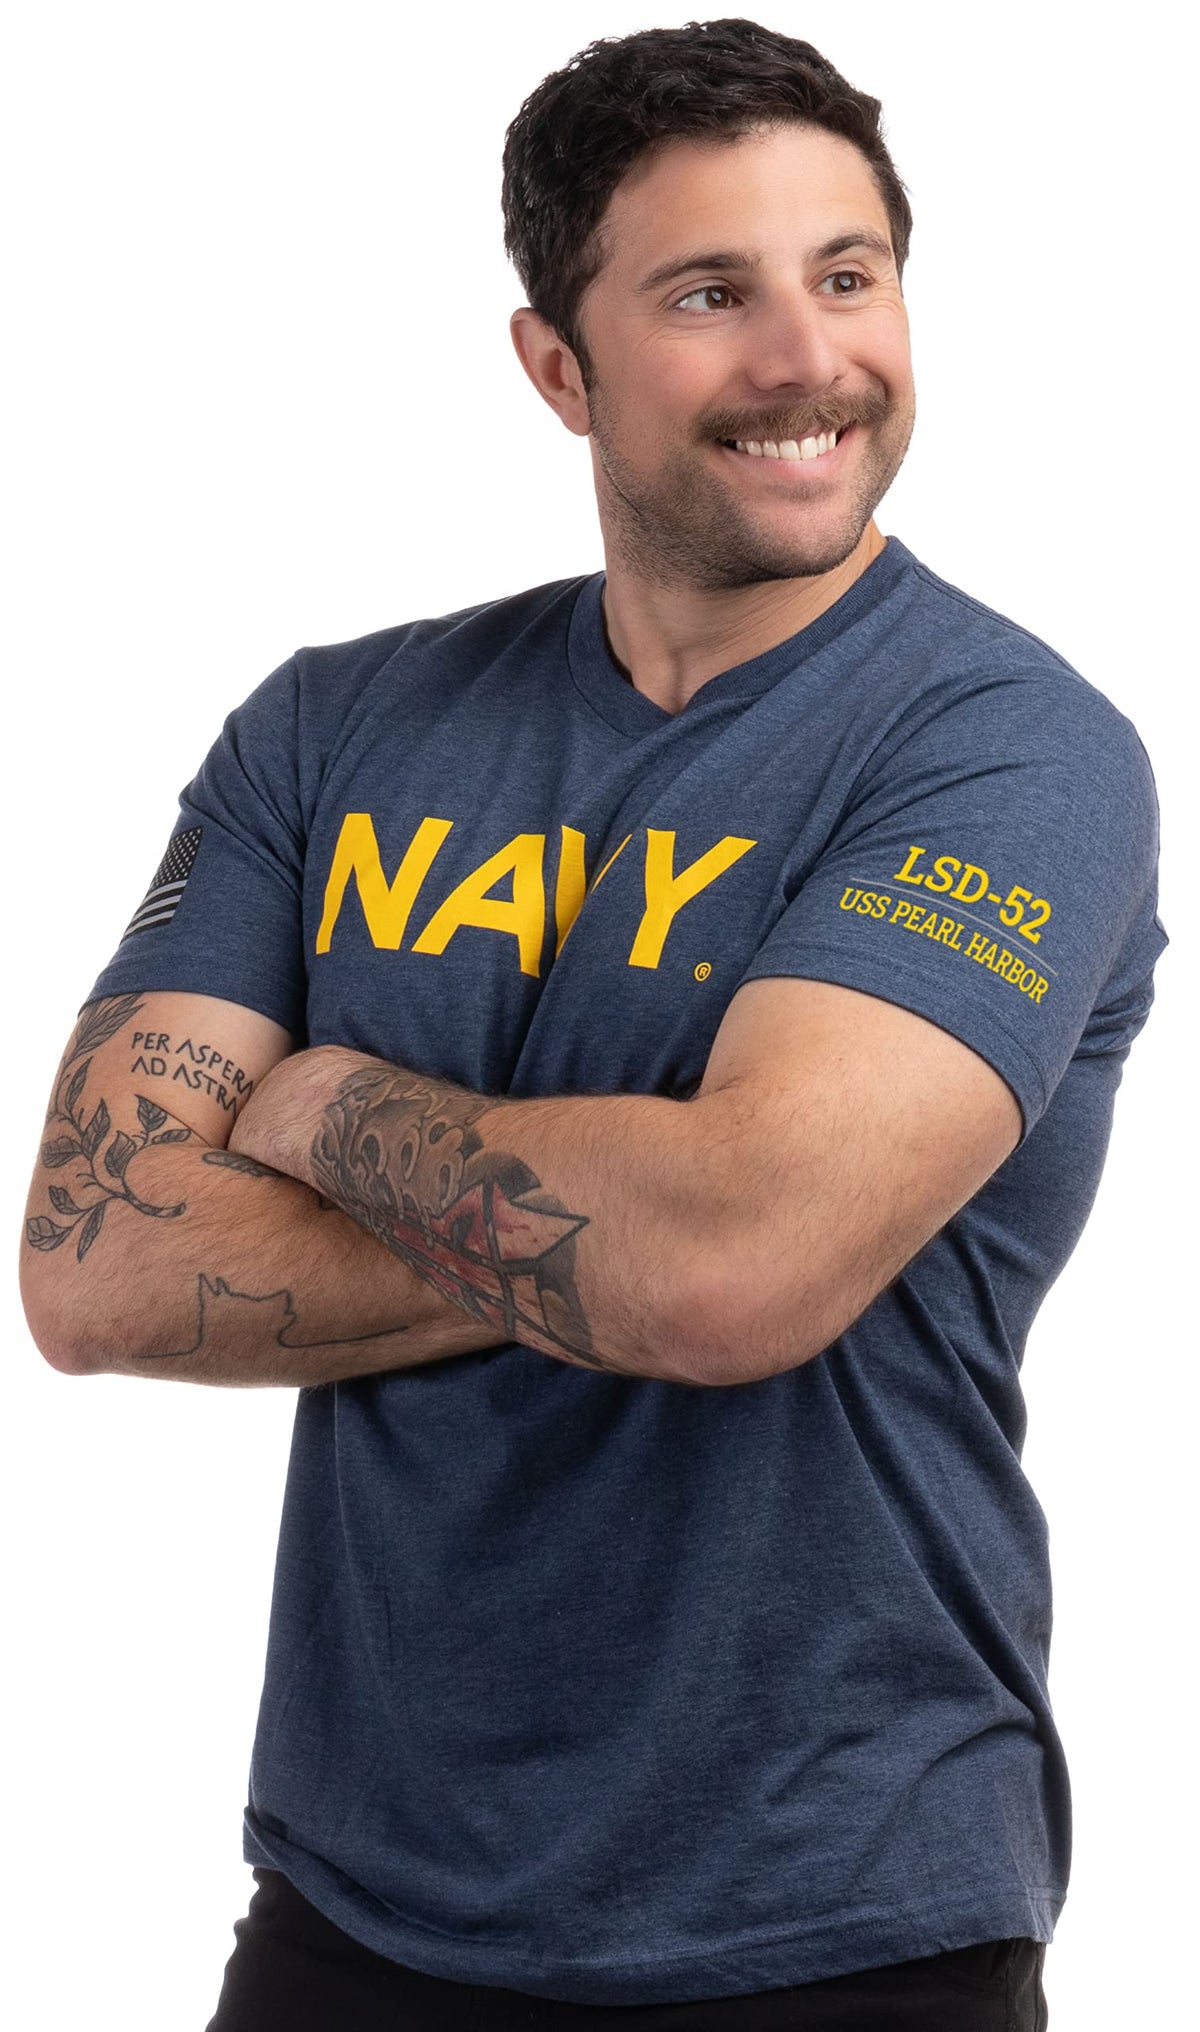 USS Pearl Harbor, LSD-52 | U.S. Navy Sailor Veteran USN United States Naval T-shirt for Men Women